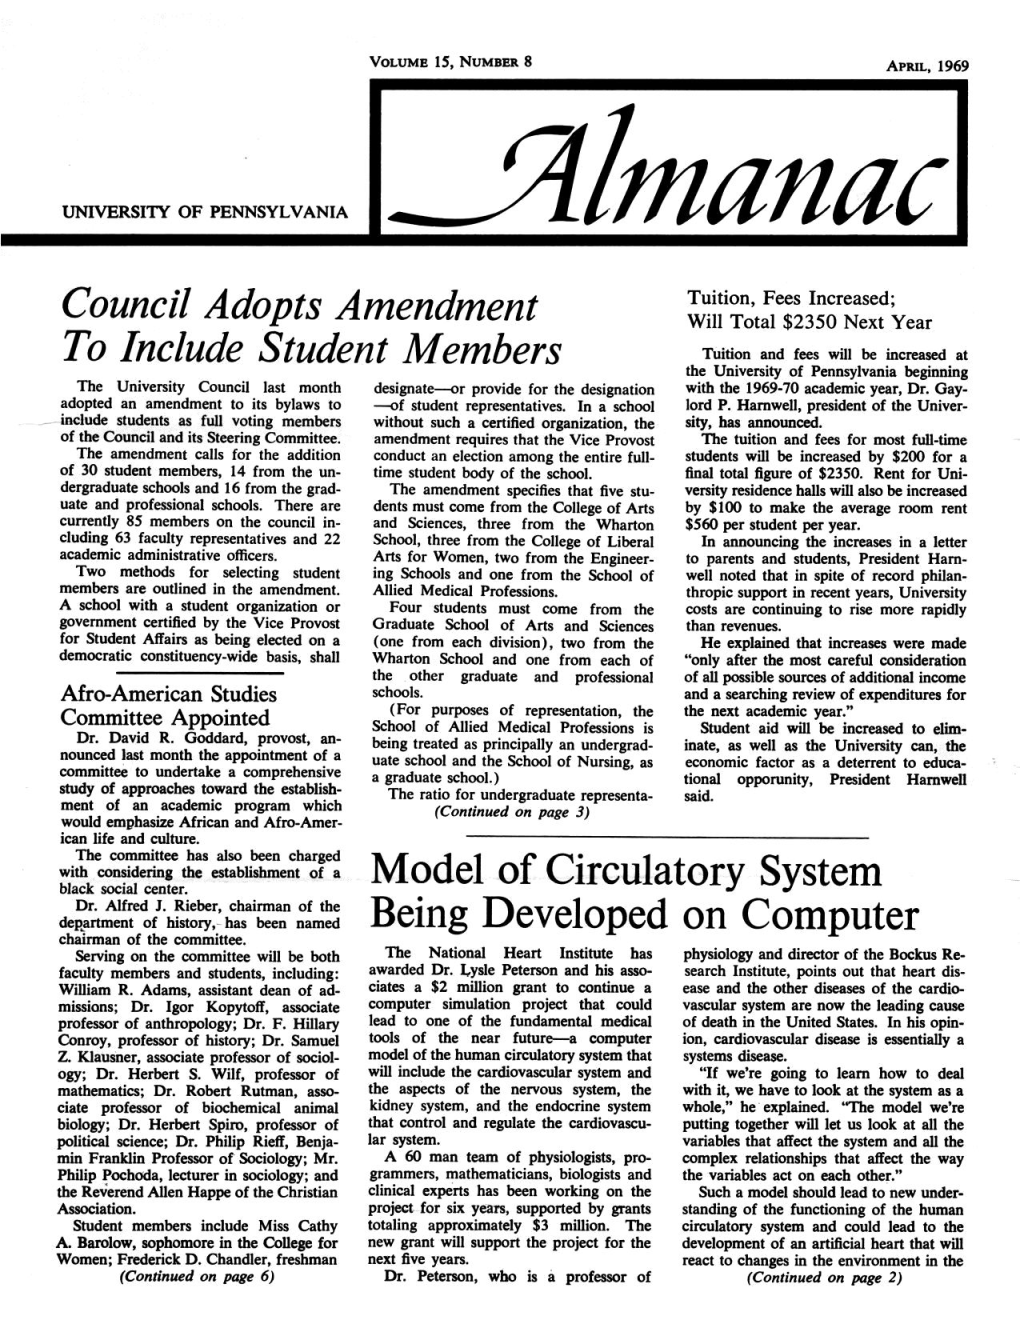 Almanac, April 1969, Vol. 15, No. 8